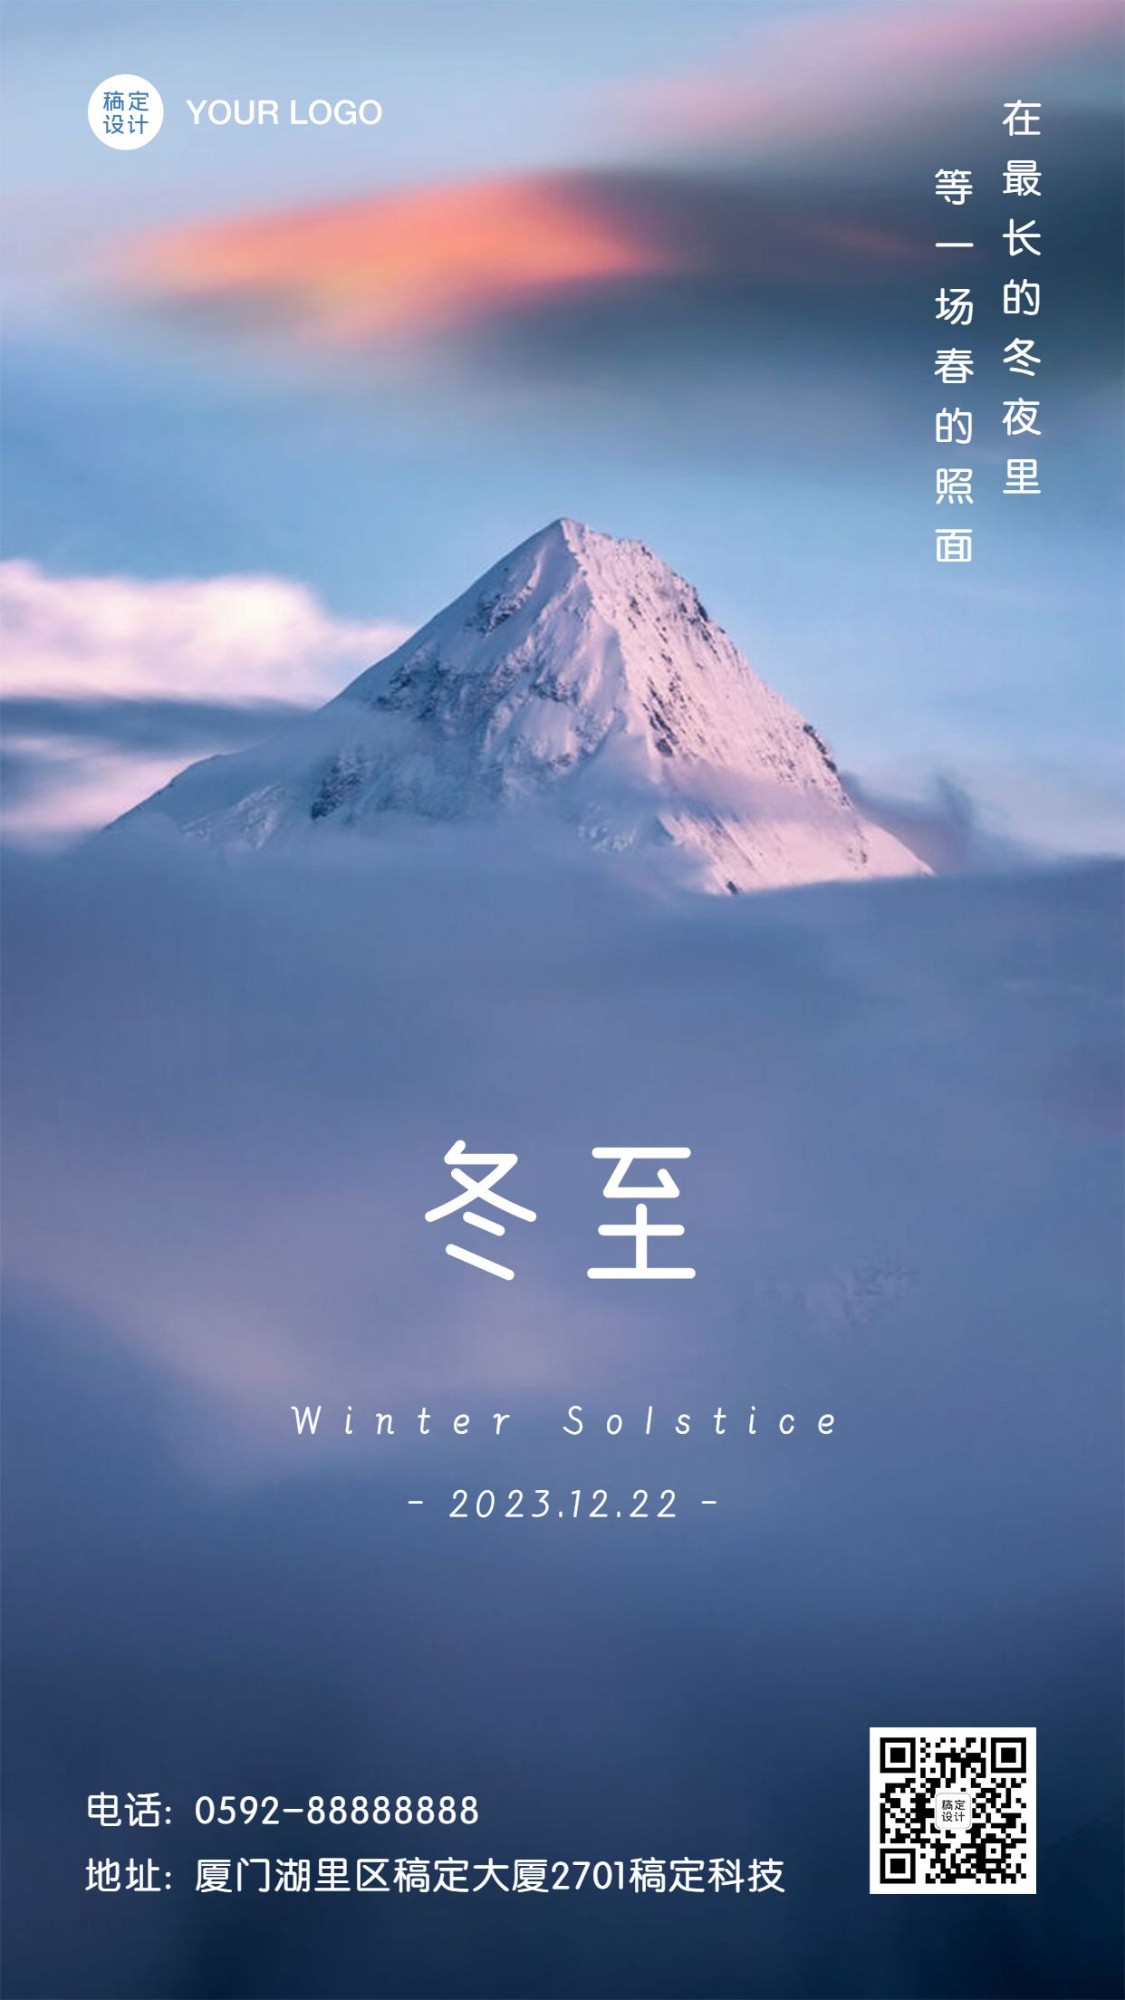 冬至节气祝福大远景雪山手机海报预览效果